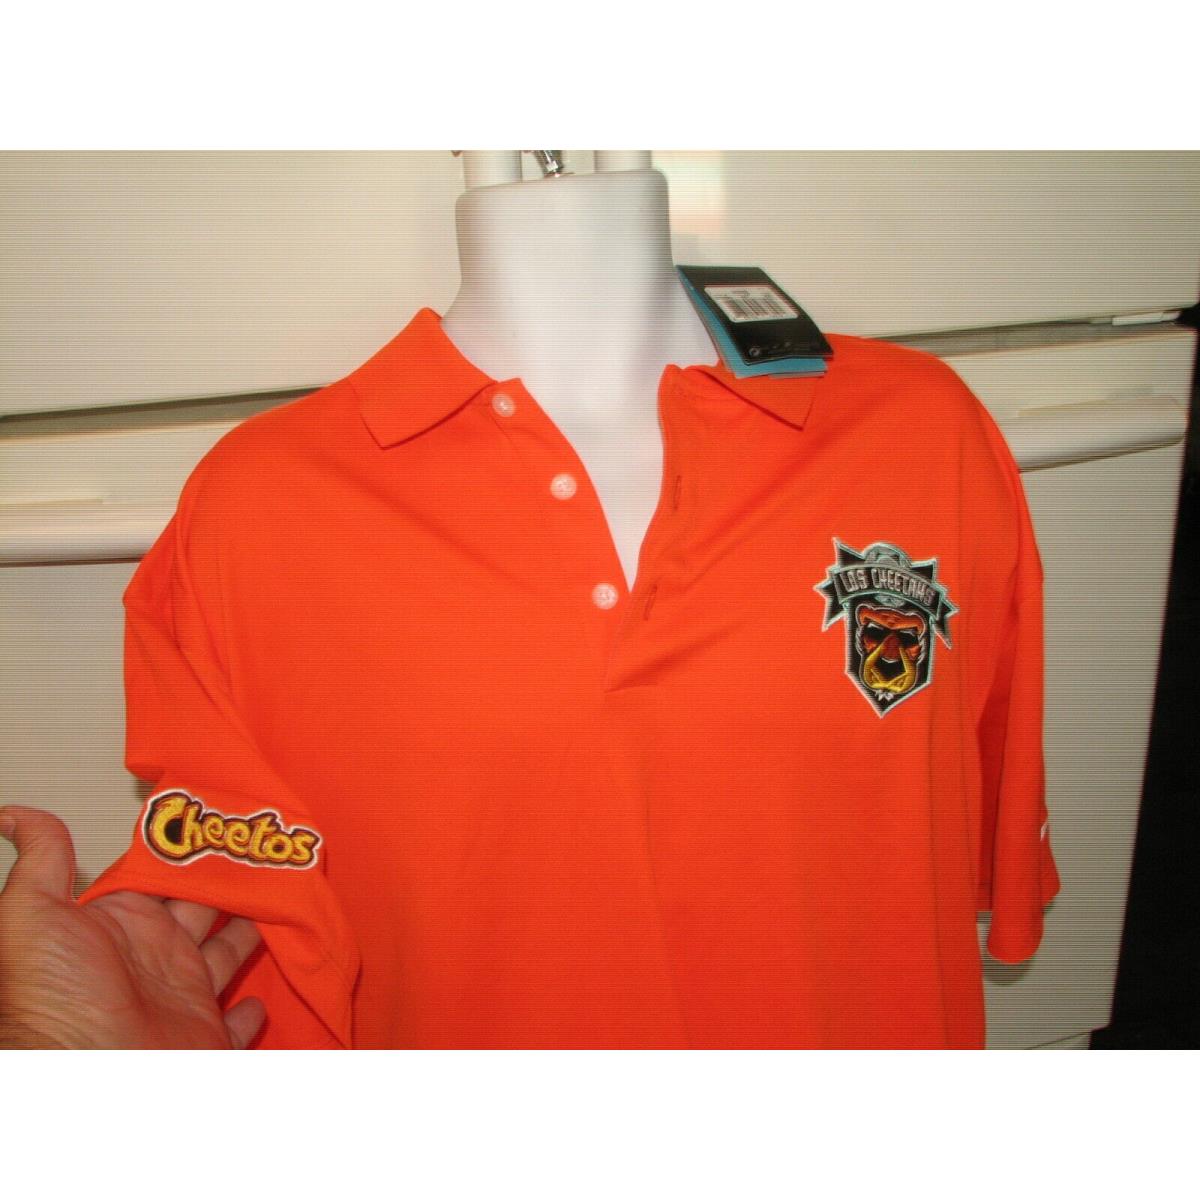 Cheetos Los Cheetahs Soccer Club Nike Golf Shirt Men`s 2XL 2013